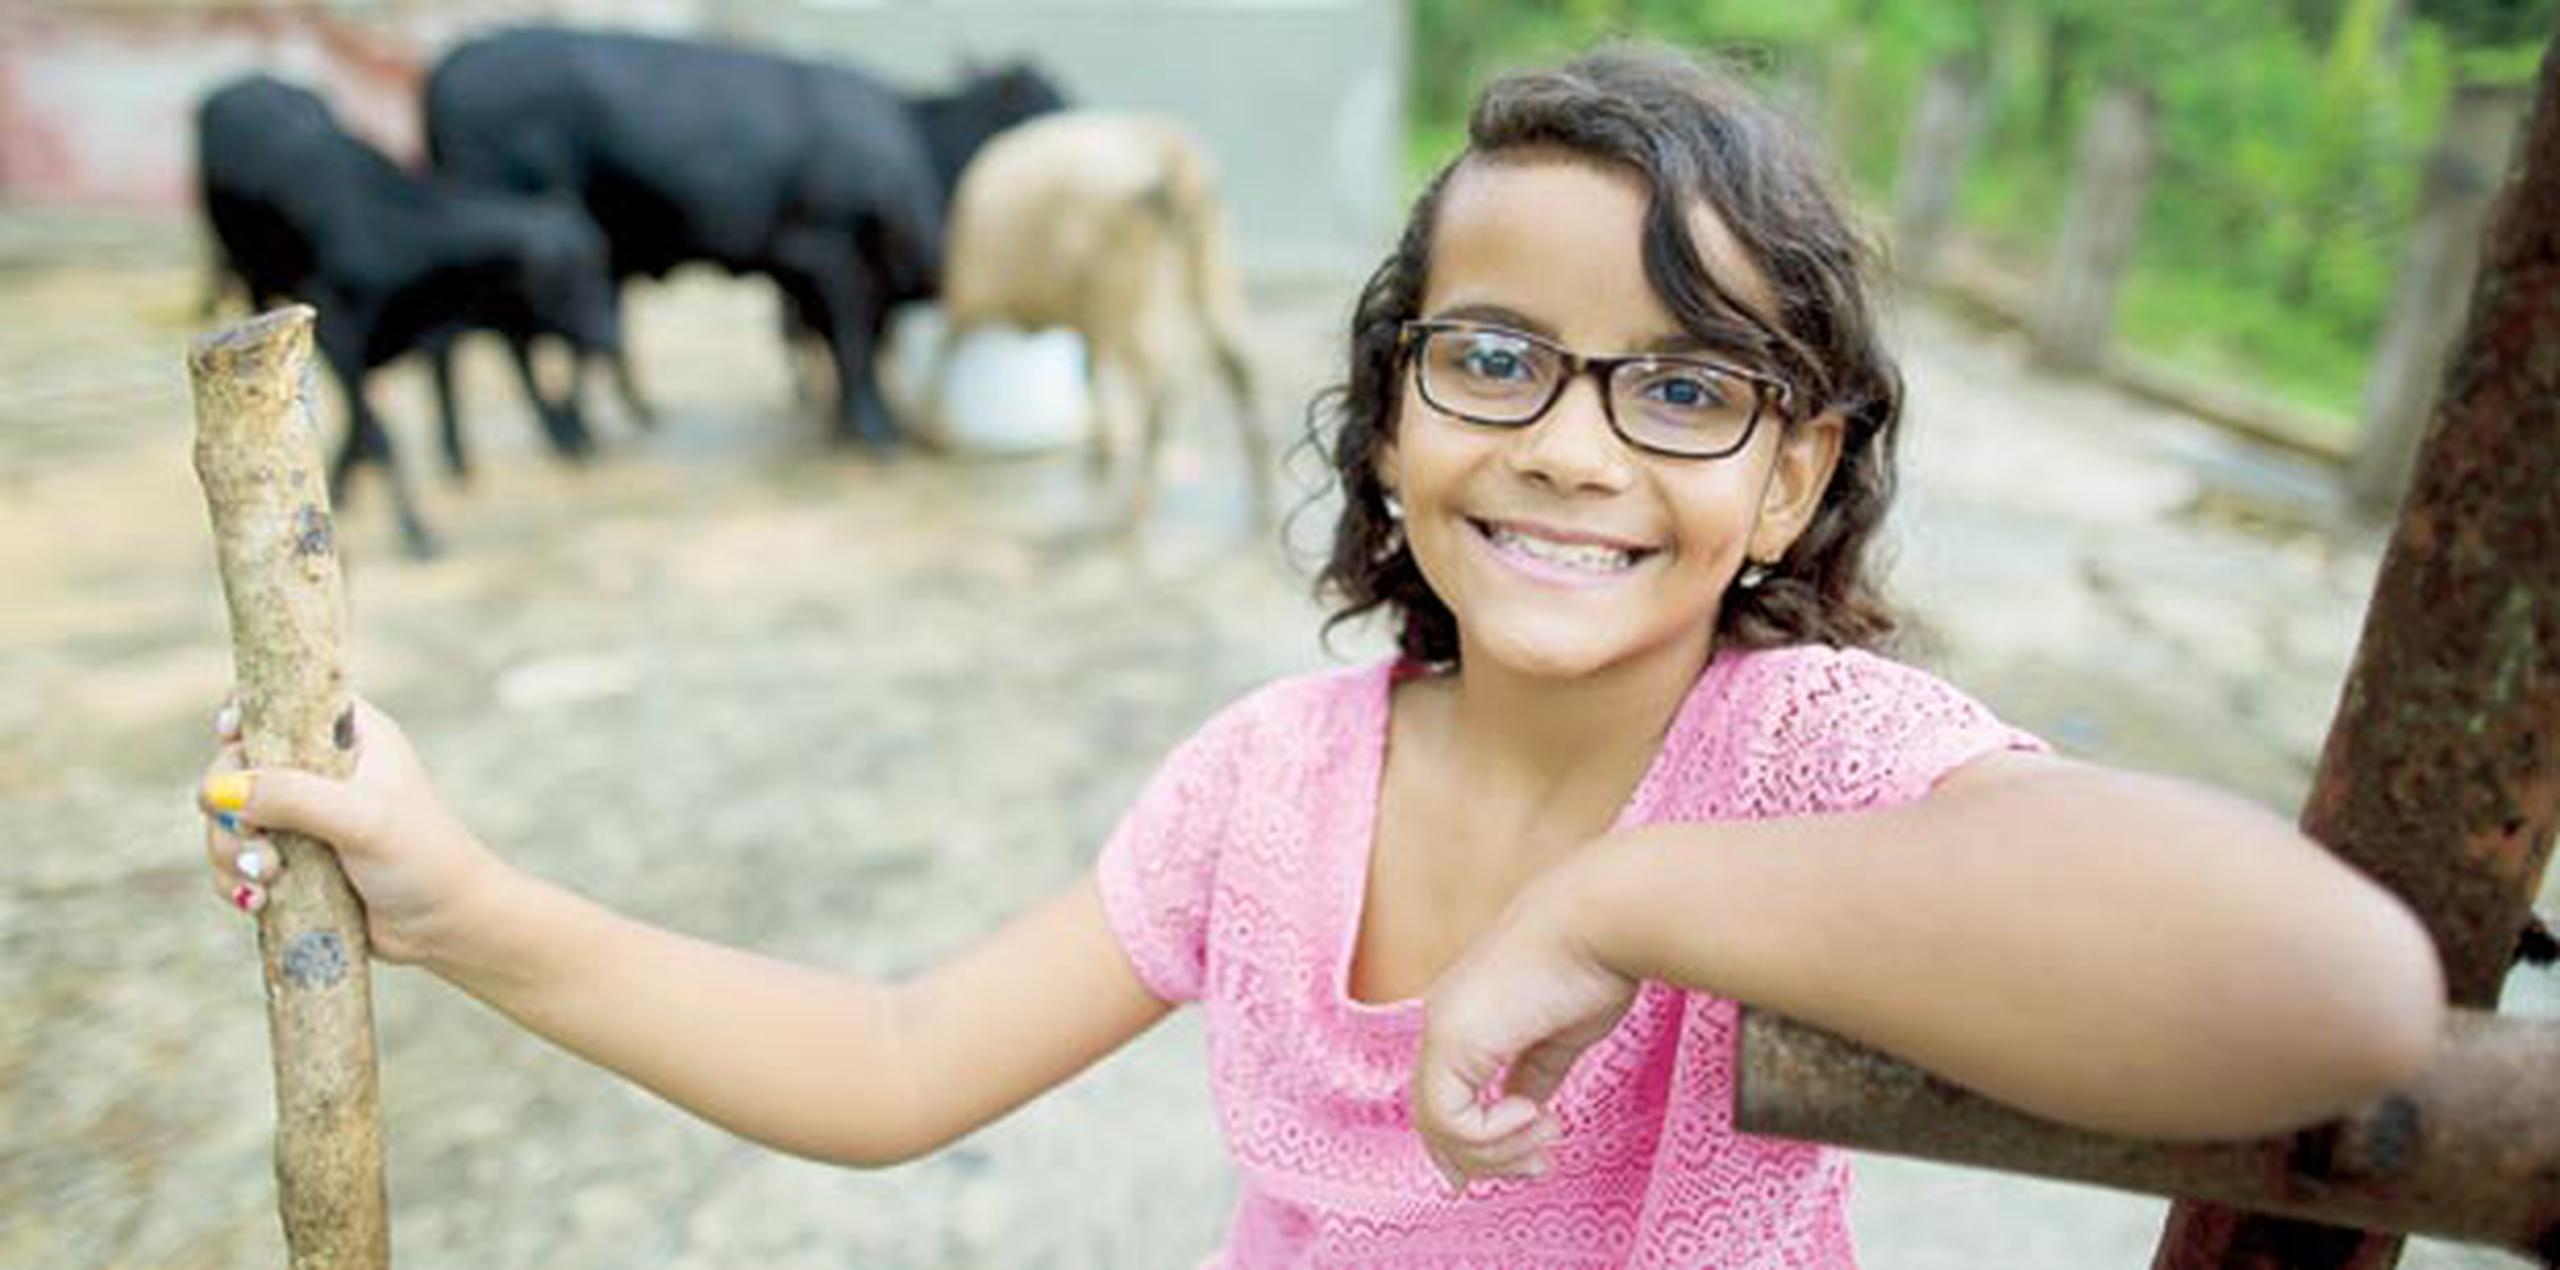 Andrea hace énfasis en la importancia de que otros niños y  niñas, como ella, aprendan de la naturaleza. También asiste a seminarios para adquirir más conocimientos sobre el ganado. (tonito.zayas@gfrmedia.com)